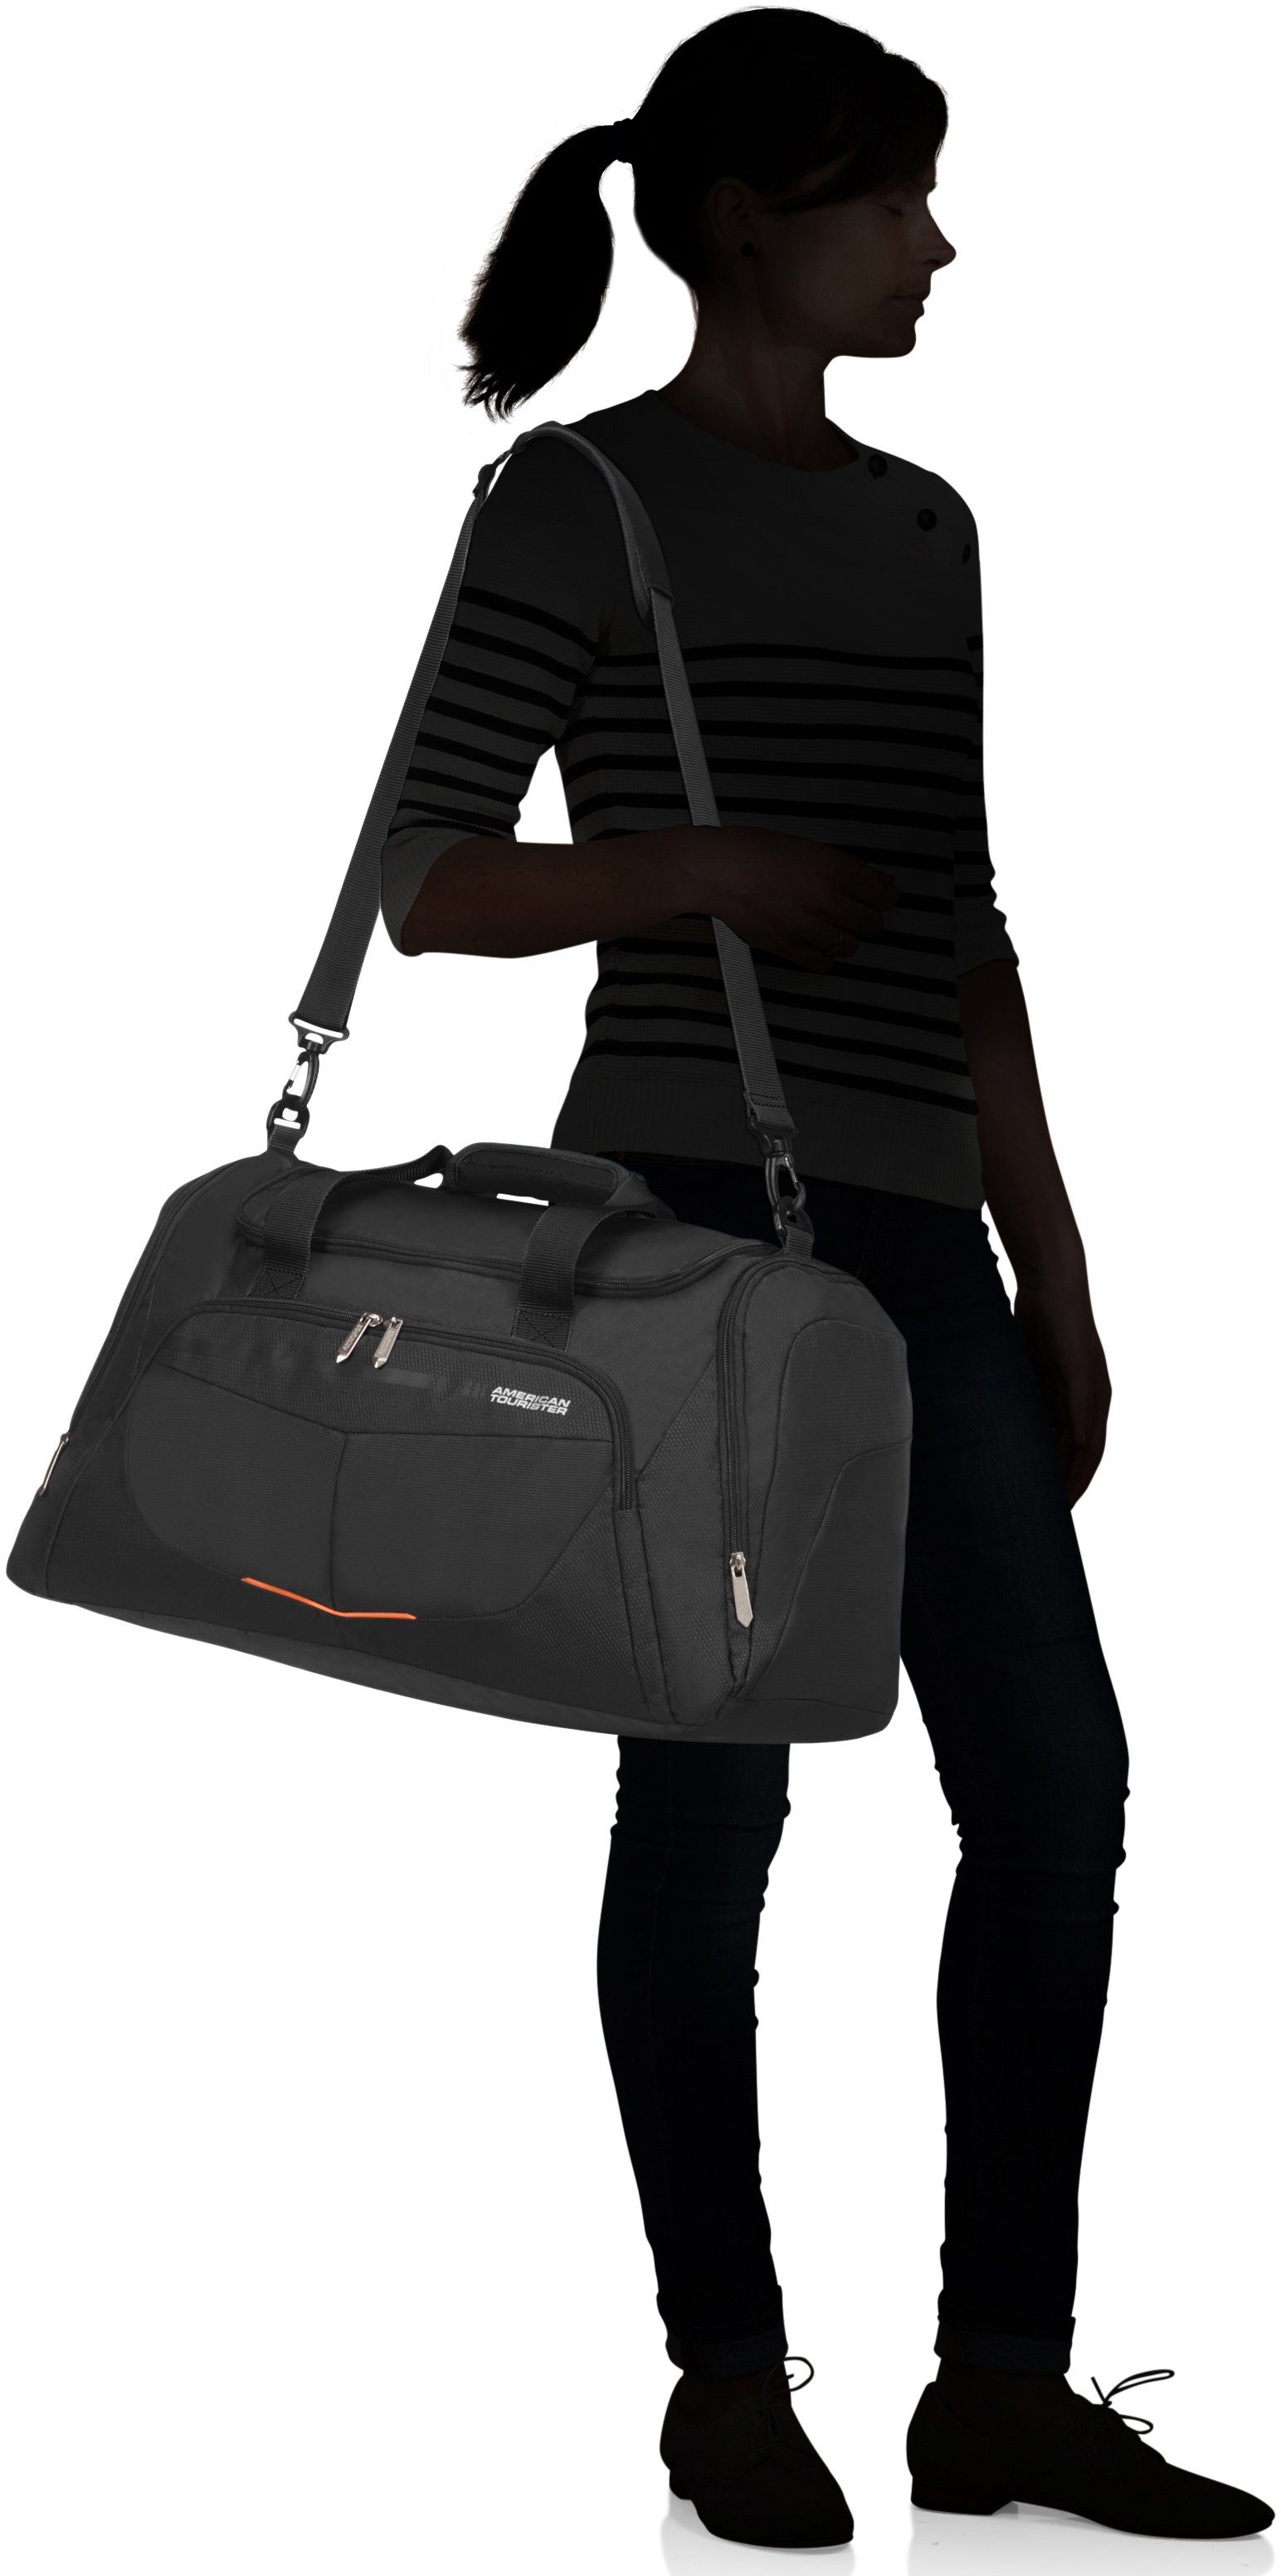 Tourister® Reisetasche American schwarz mit Trolley-Aufsteck-System Summerfunk,